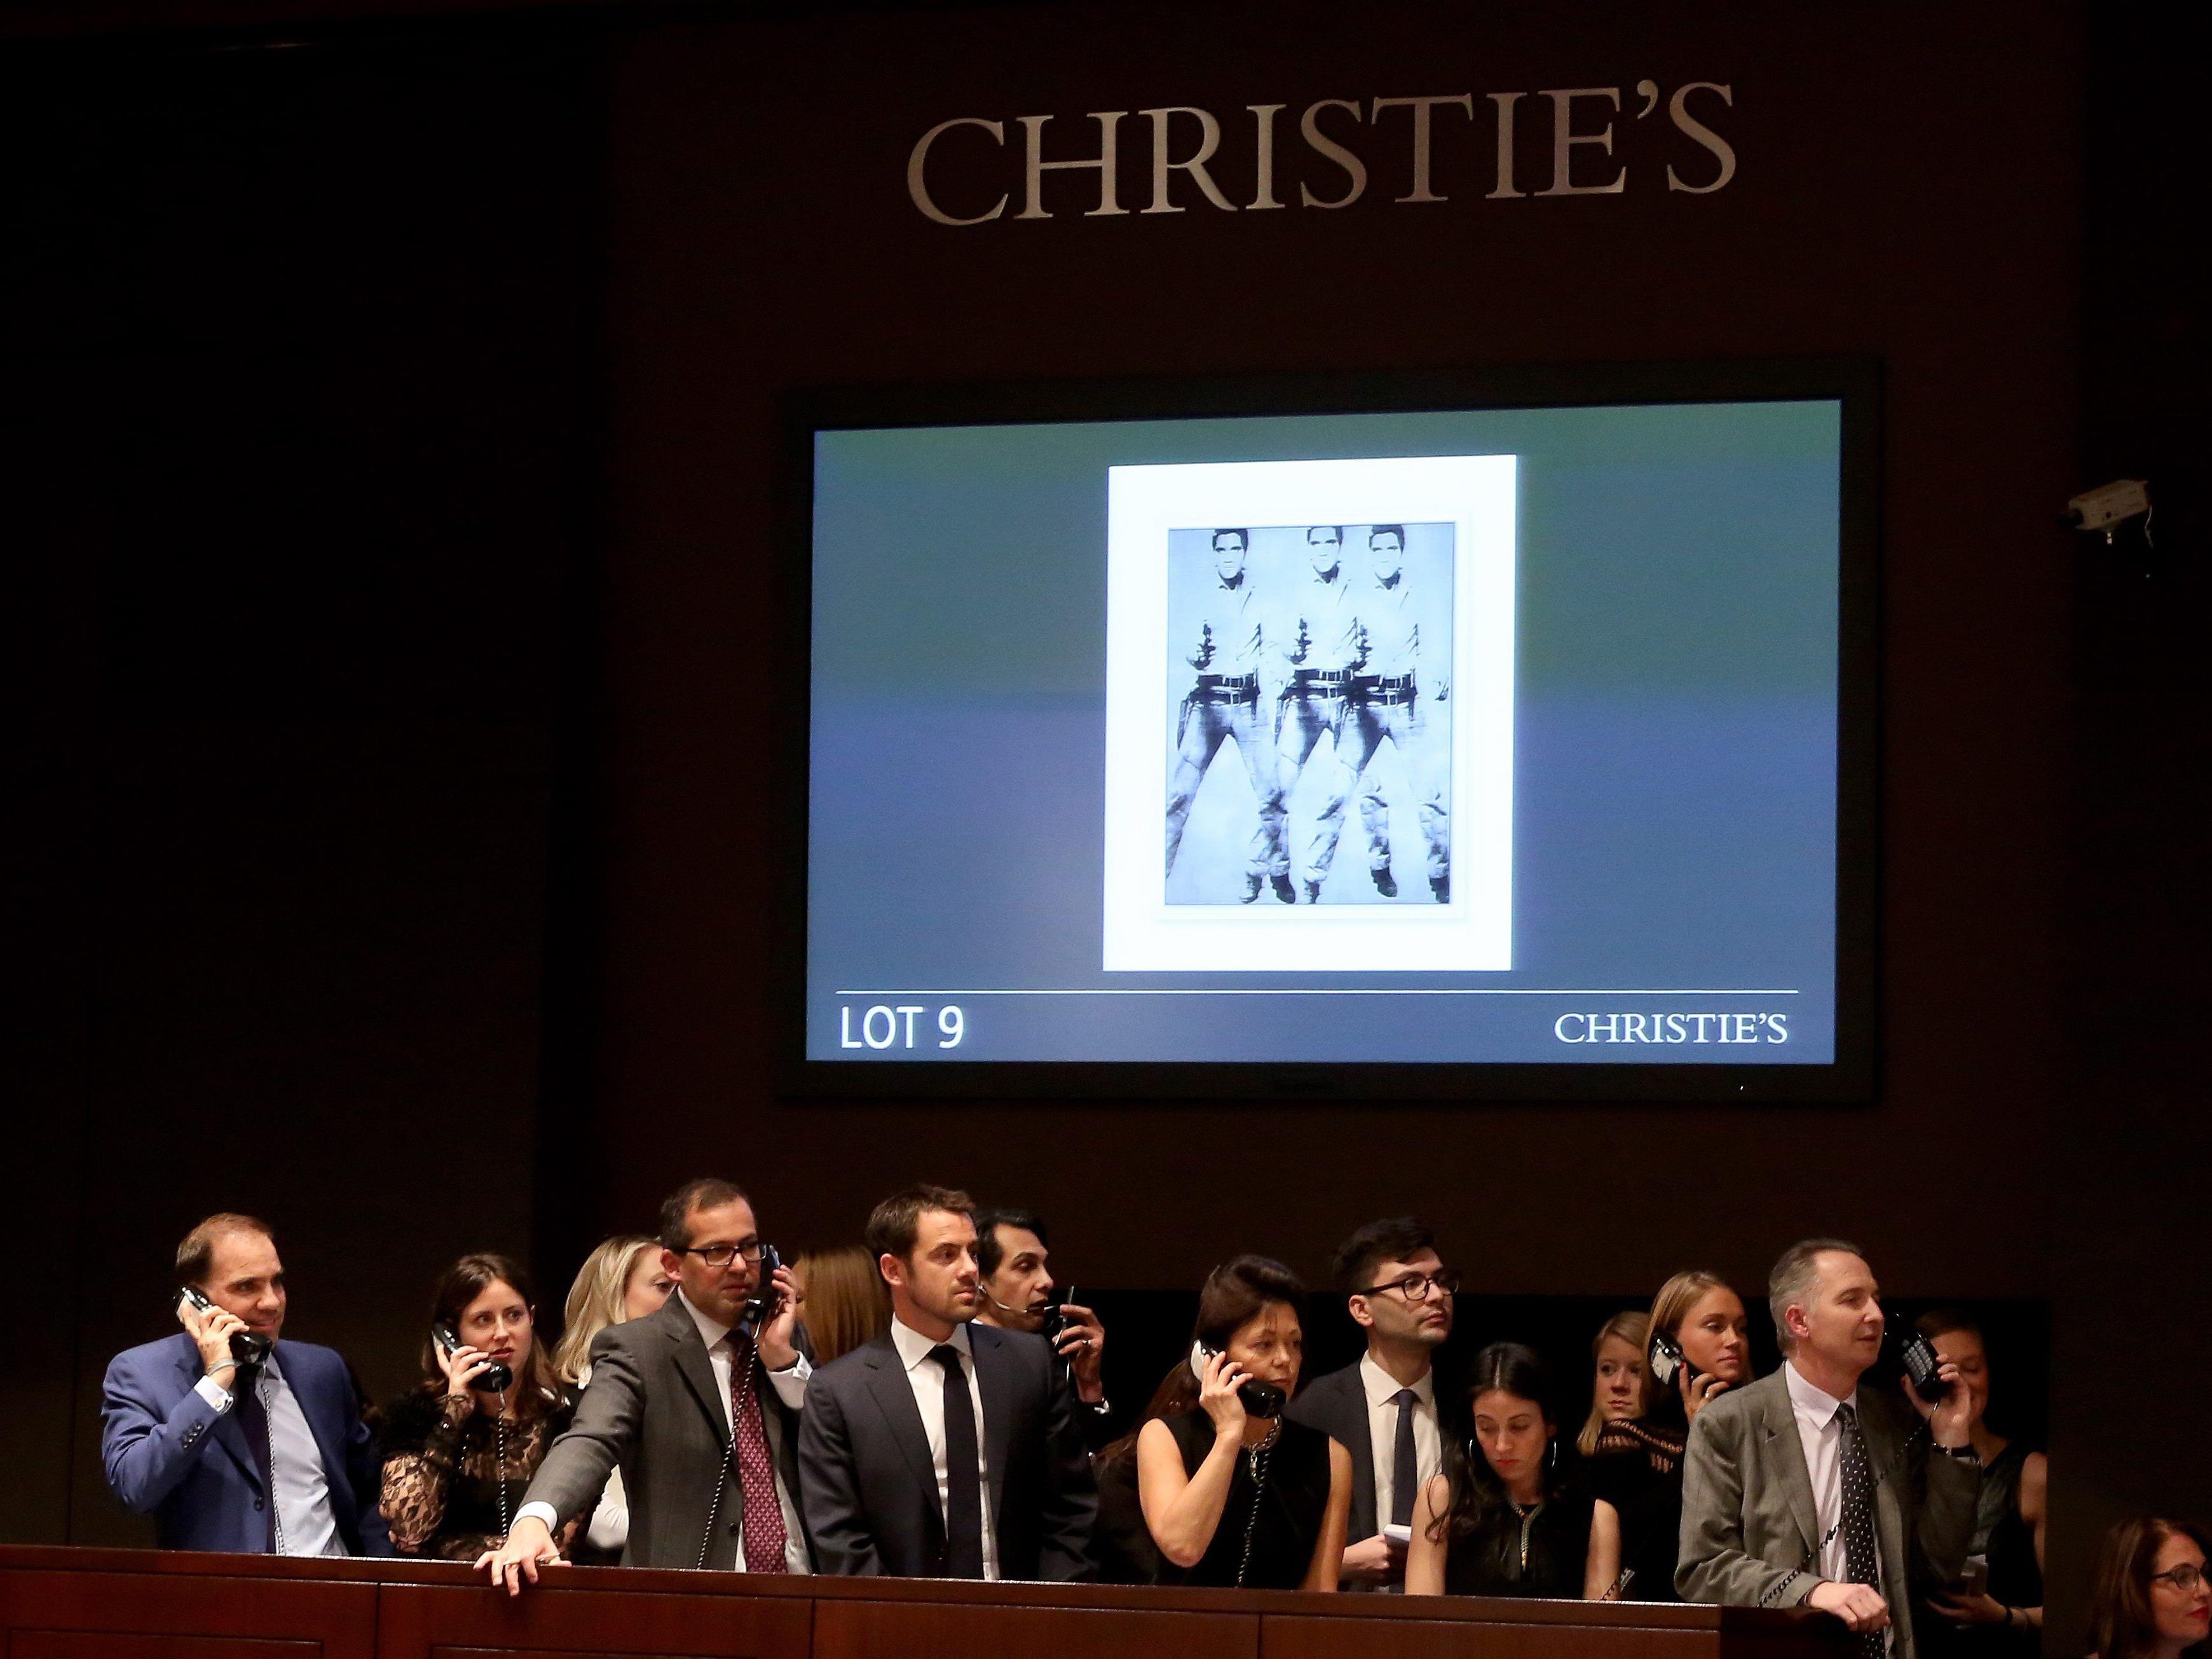 Die beiden Warhol-Bilder des Casinobetreibers Westspiel wurden für 151,5 Mio. Euro verkauft.